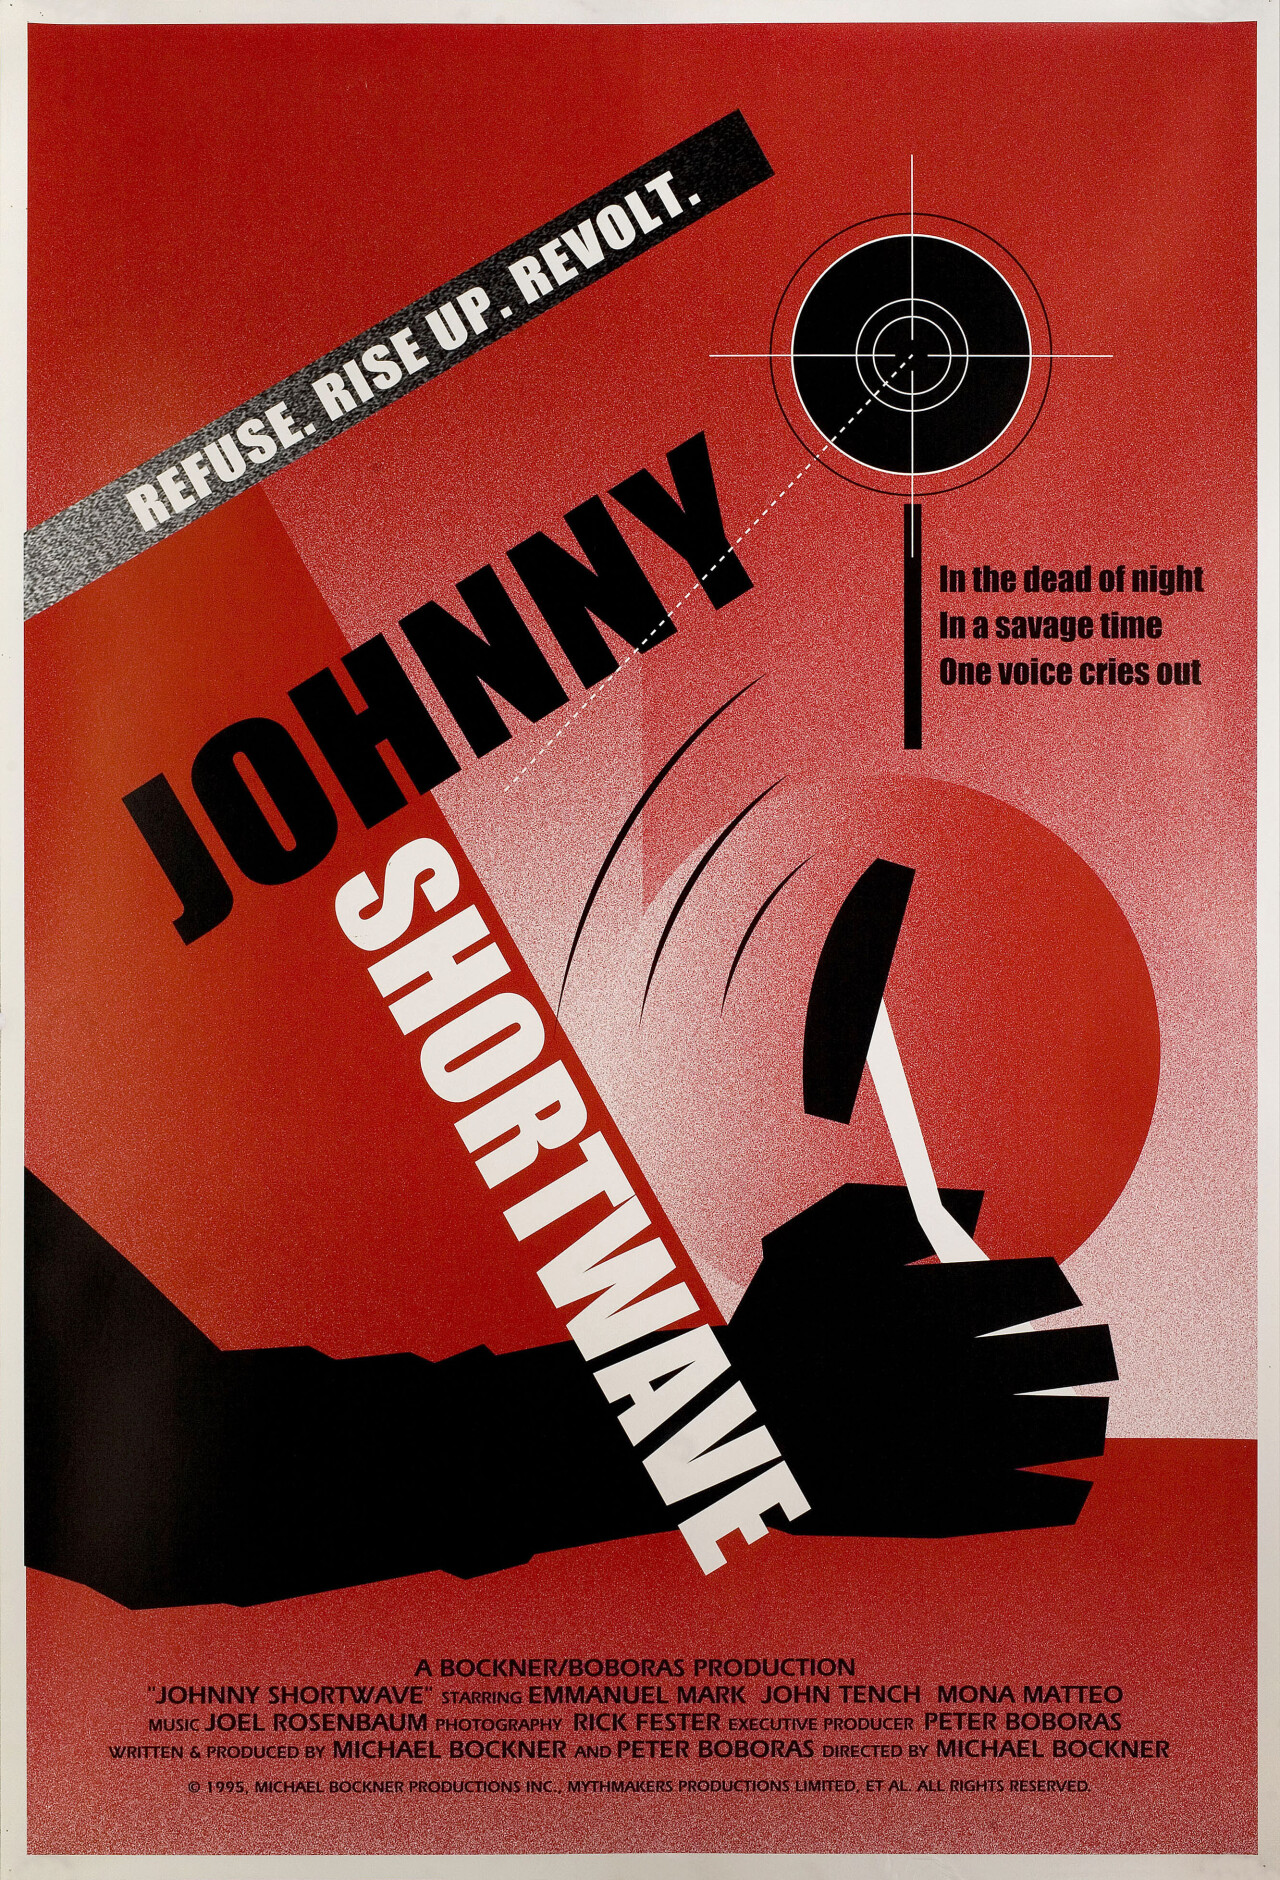 Джонни Шортвейв (Johnny Shortwave, 1996), режиссёр Майкл Бокнер, американский постер к фильму (графический дизайн, 1996 год)